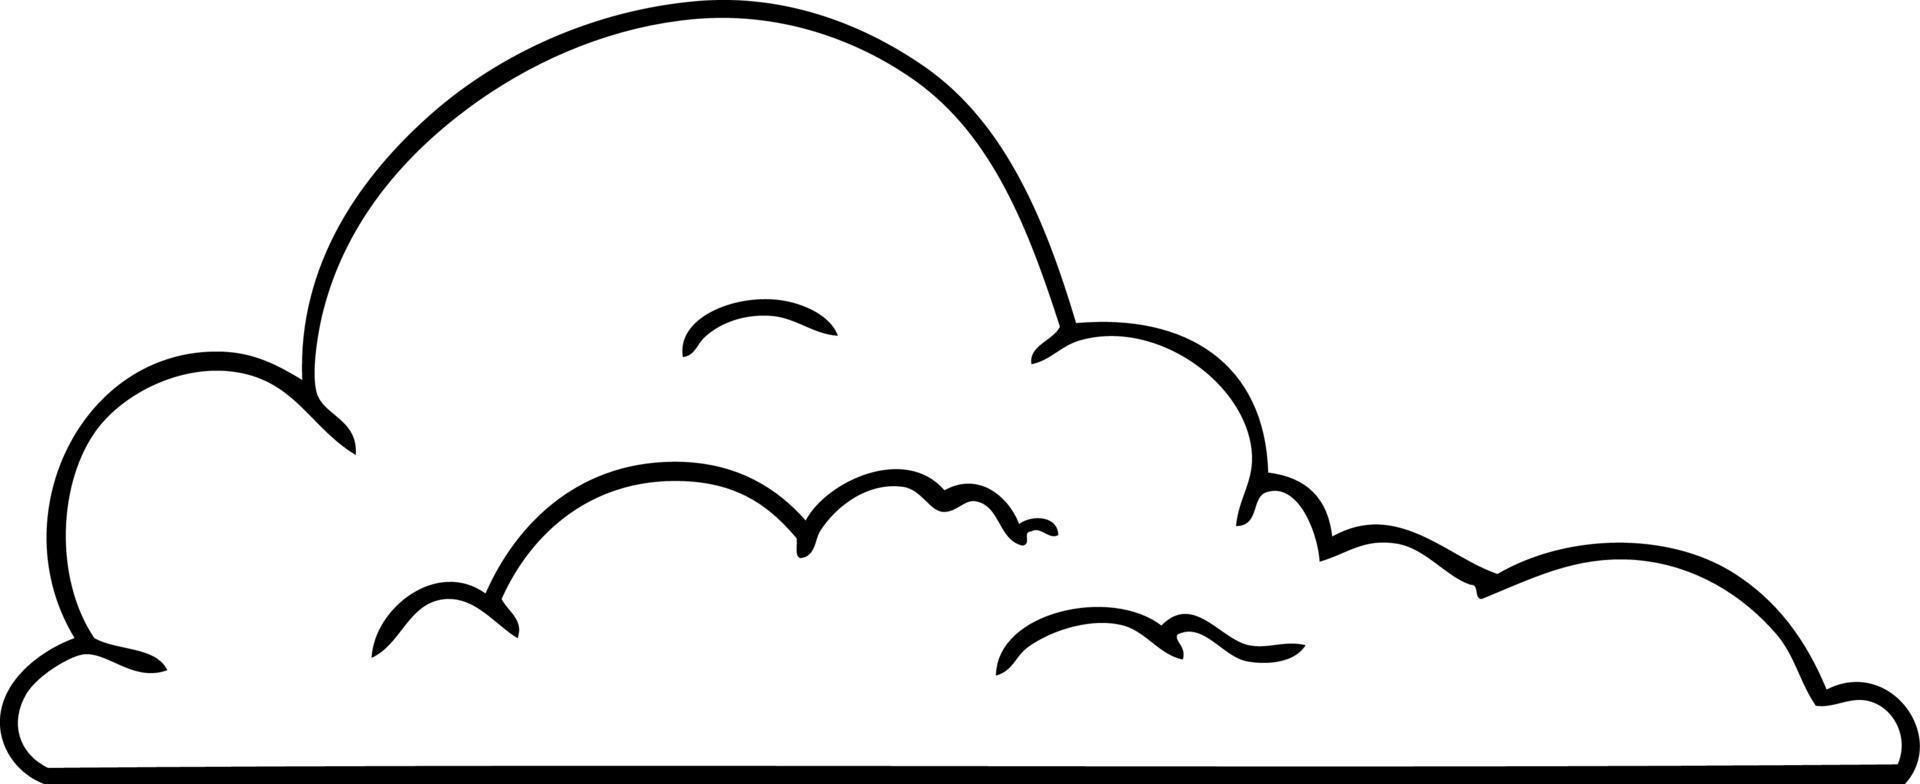 dessin au trait doodle de gros nuages blancs vecteur